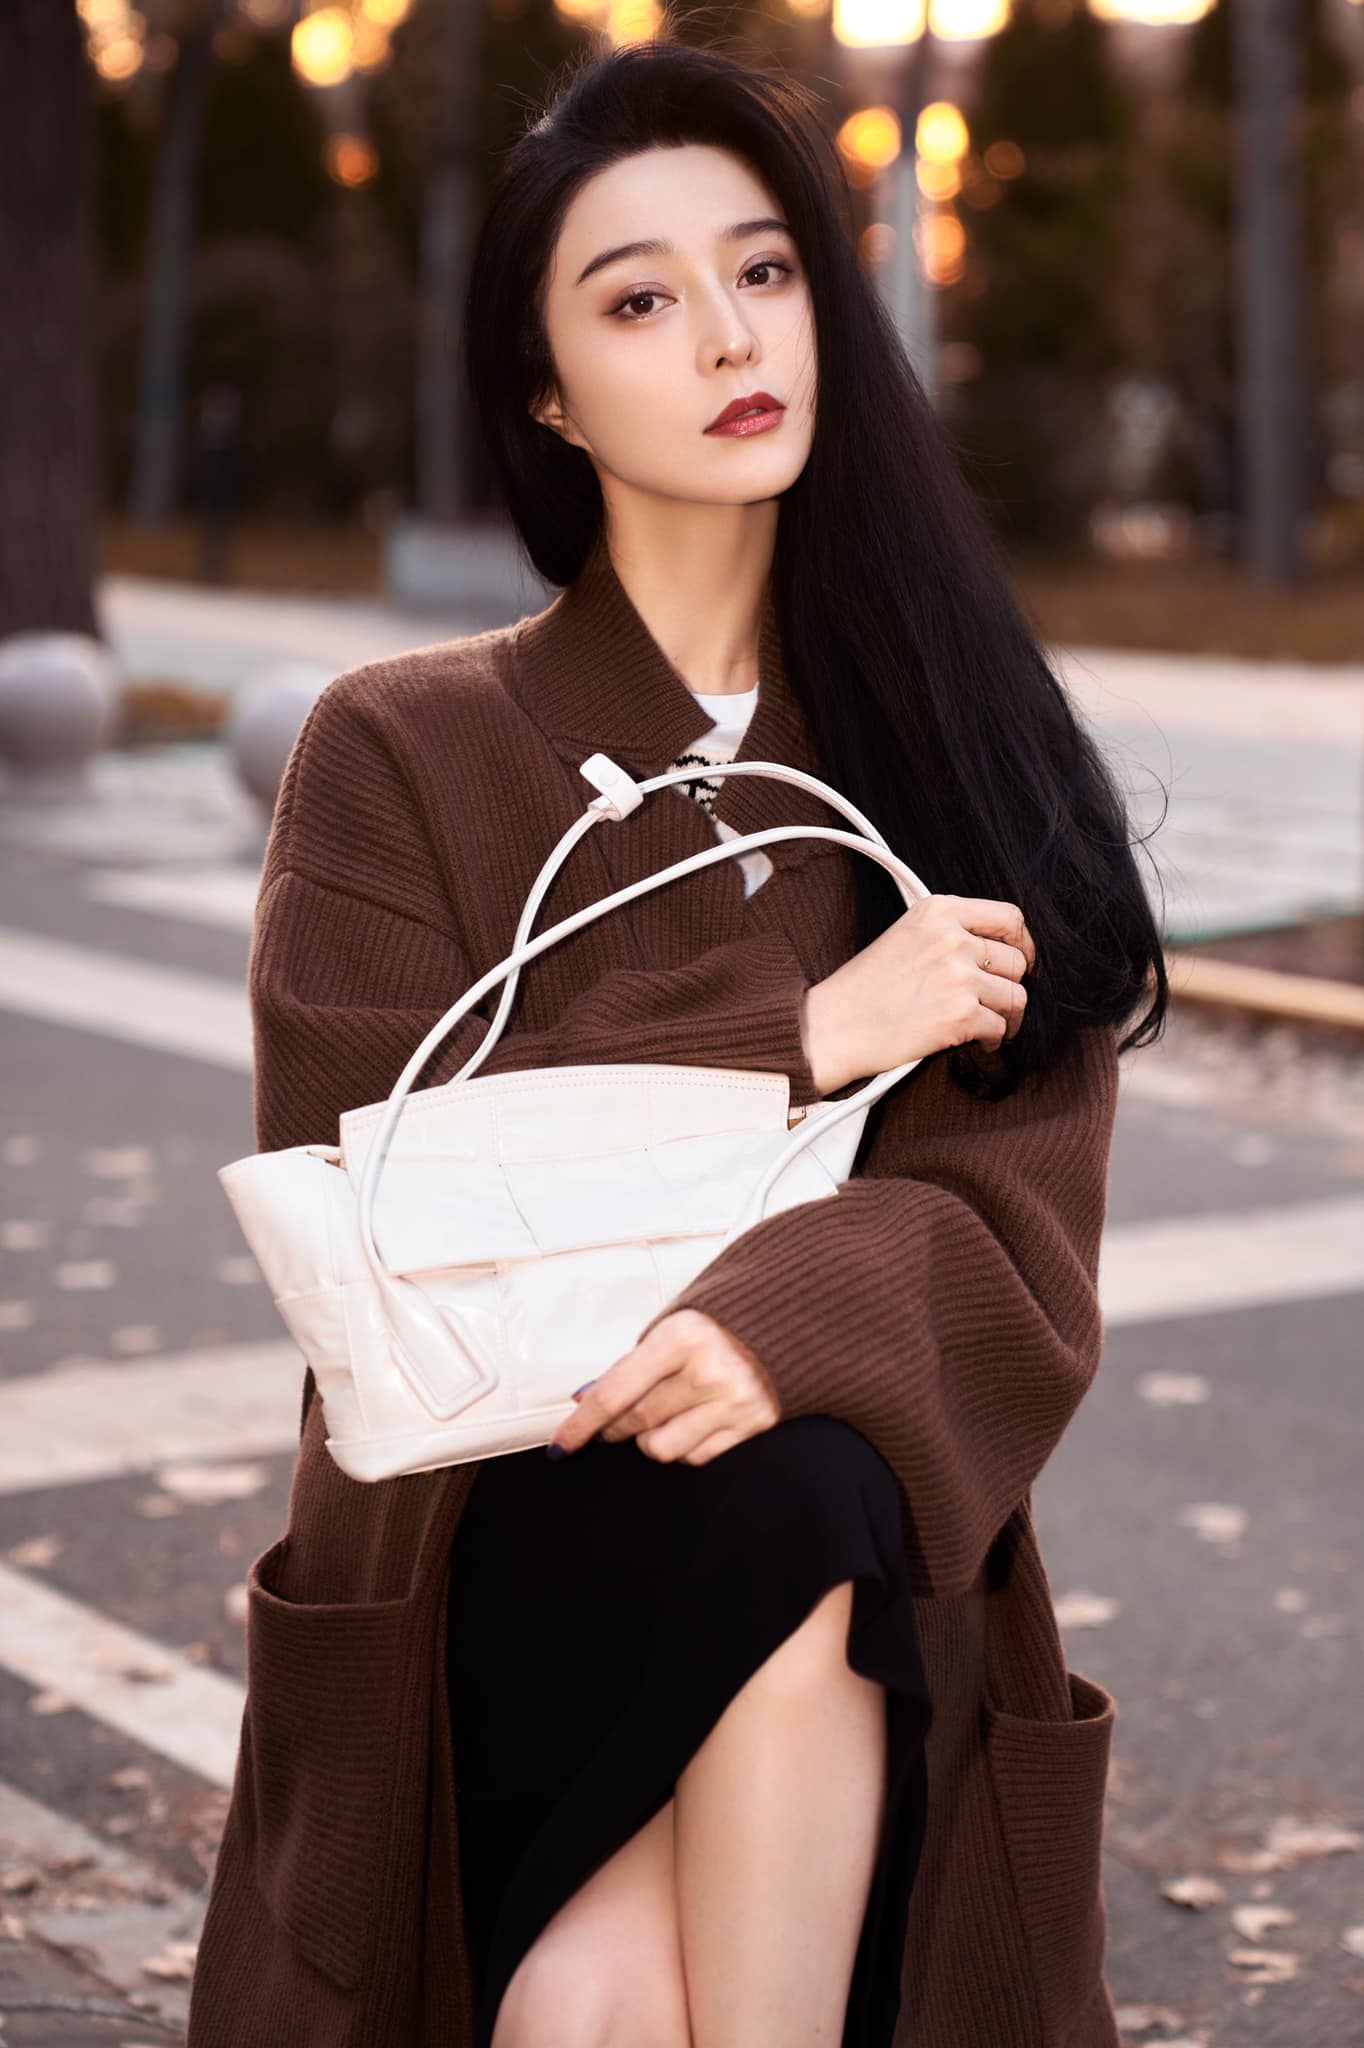 Với mái tóc đen dài, đôi môi đỏ cùng những trang phục đậm chất mùa thu, Phạm Băng Băng lại 'gây thương nhớ' với vẻ đẹp cổ điển như những mỹ nhân TVB thập niên 90.